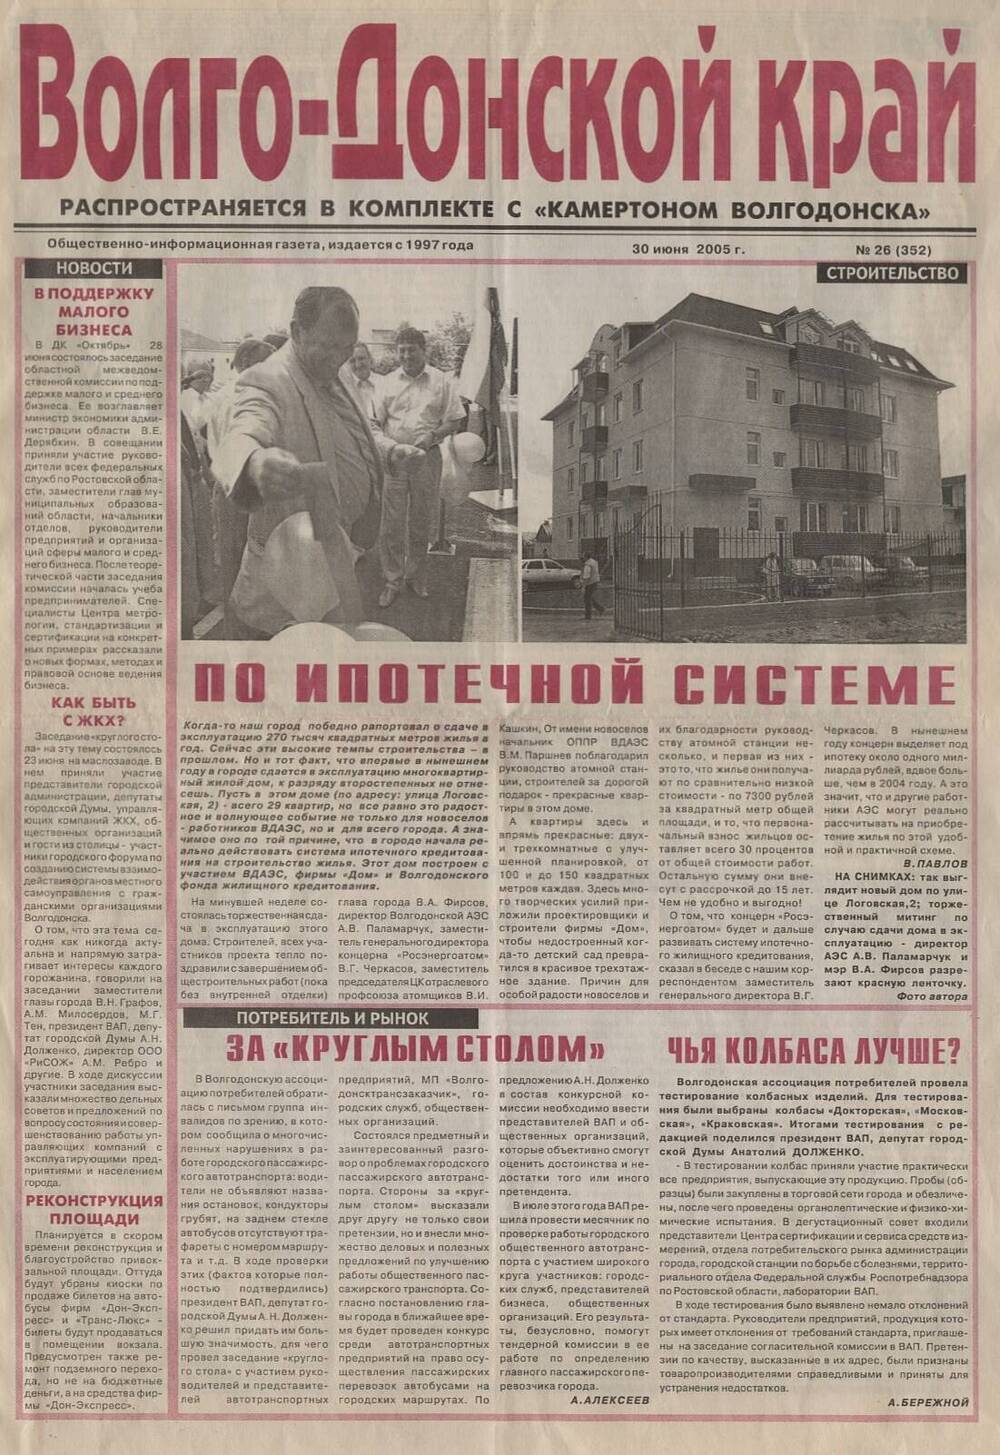 Газета Волго-Донской край № 26(352)